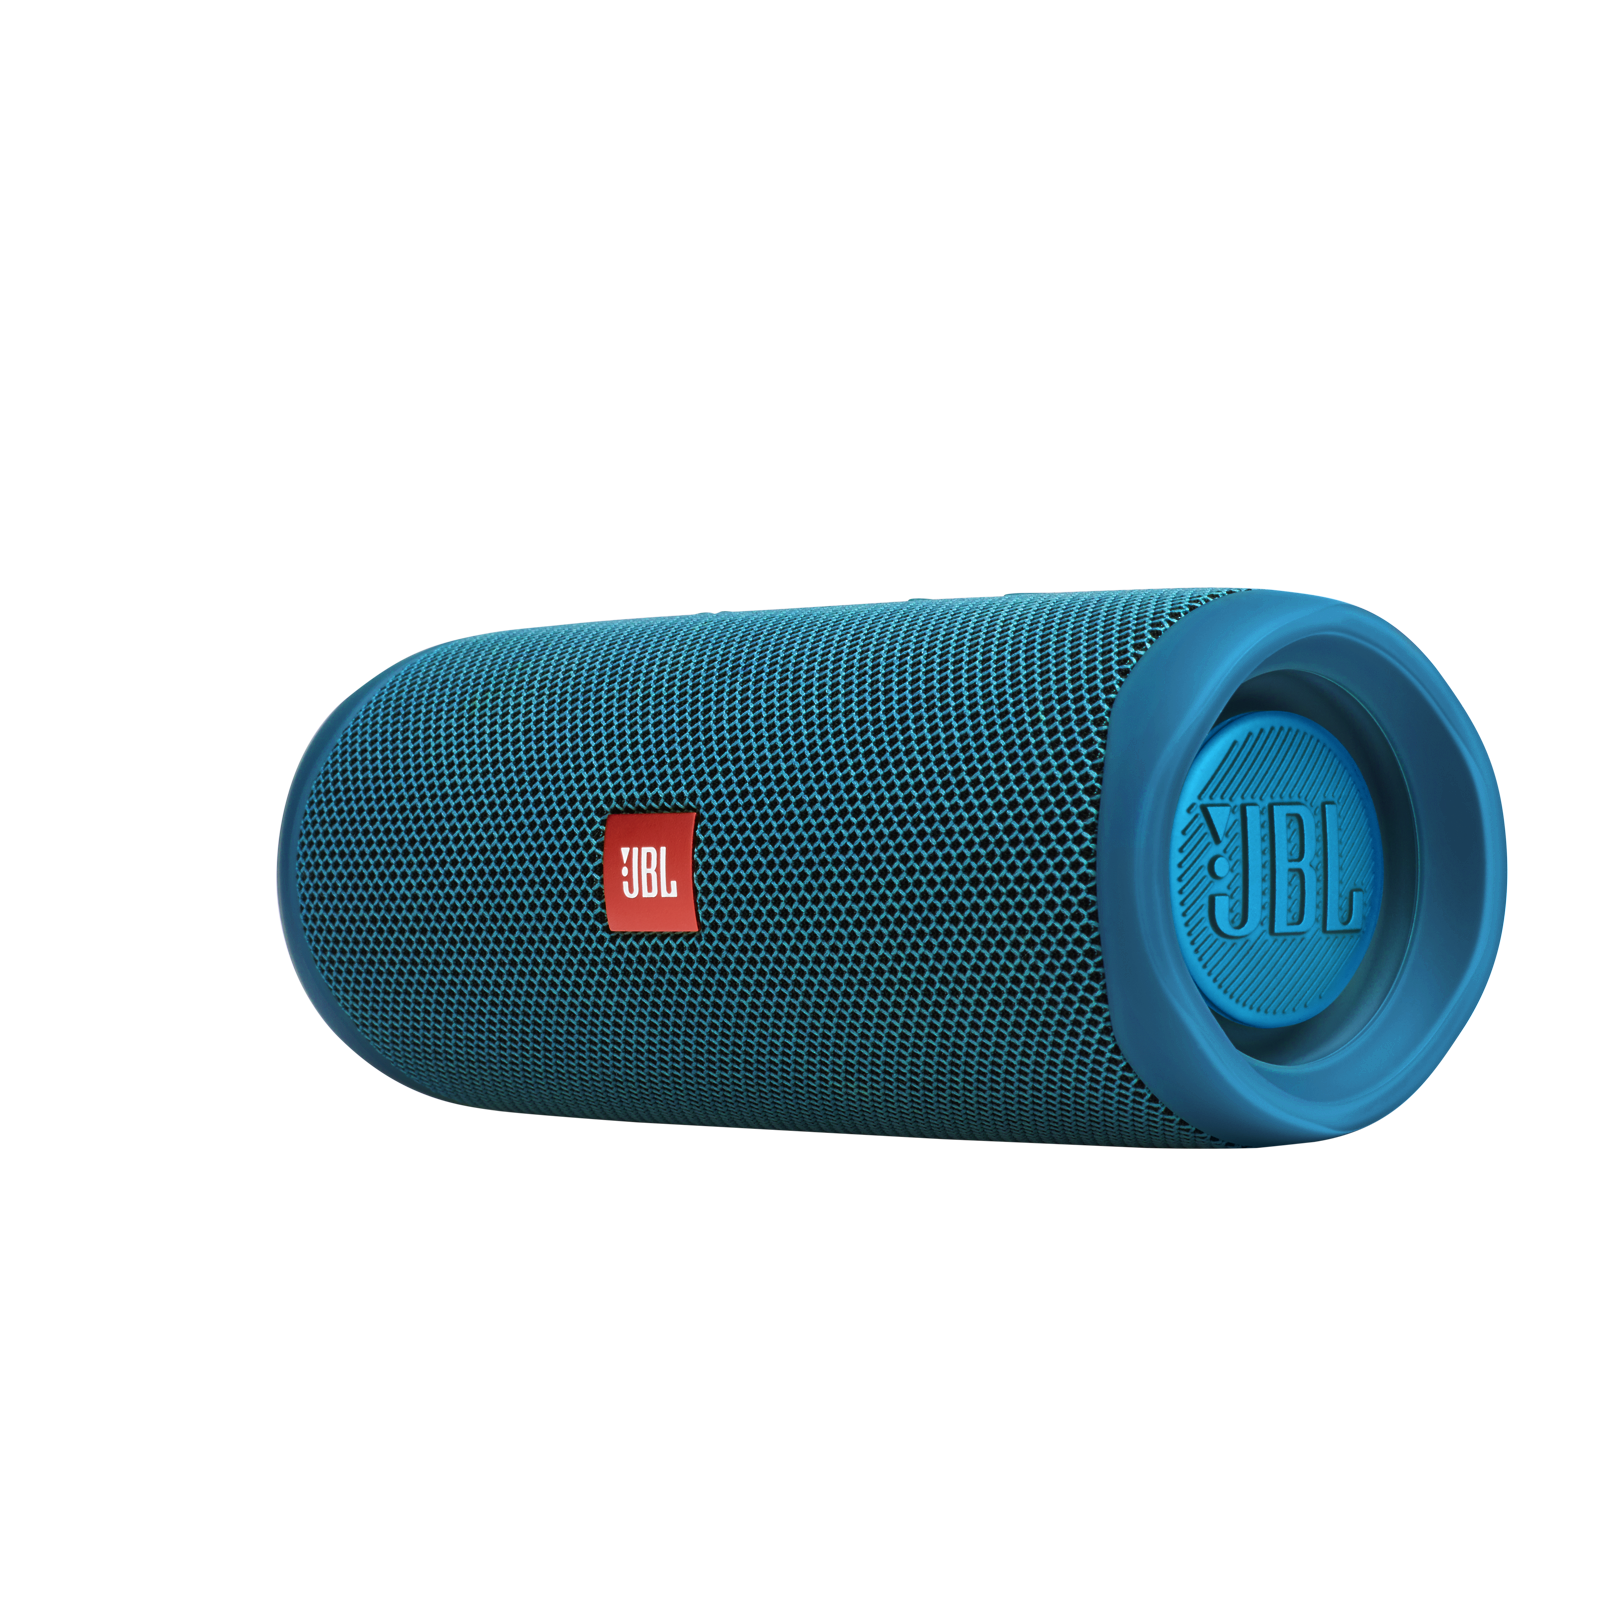 Enceinte Bluetooth portable Étanchéité IPX7 pour piscine et plage JBL Flip 5 Eco Son signature JBL Composée à 90% de plastique recyclé Couleur : Bleu océan 